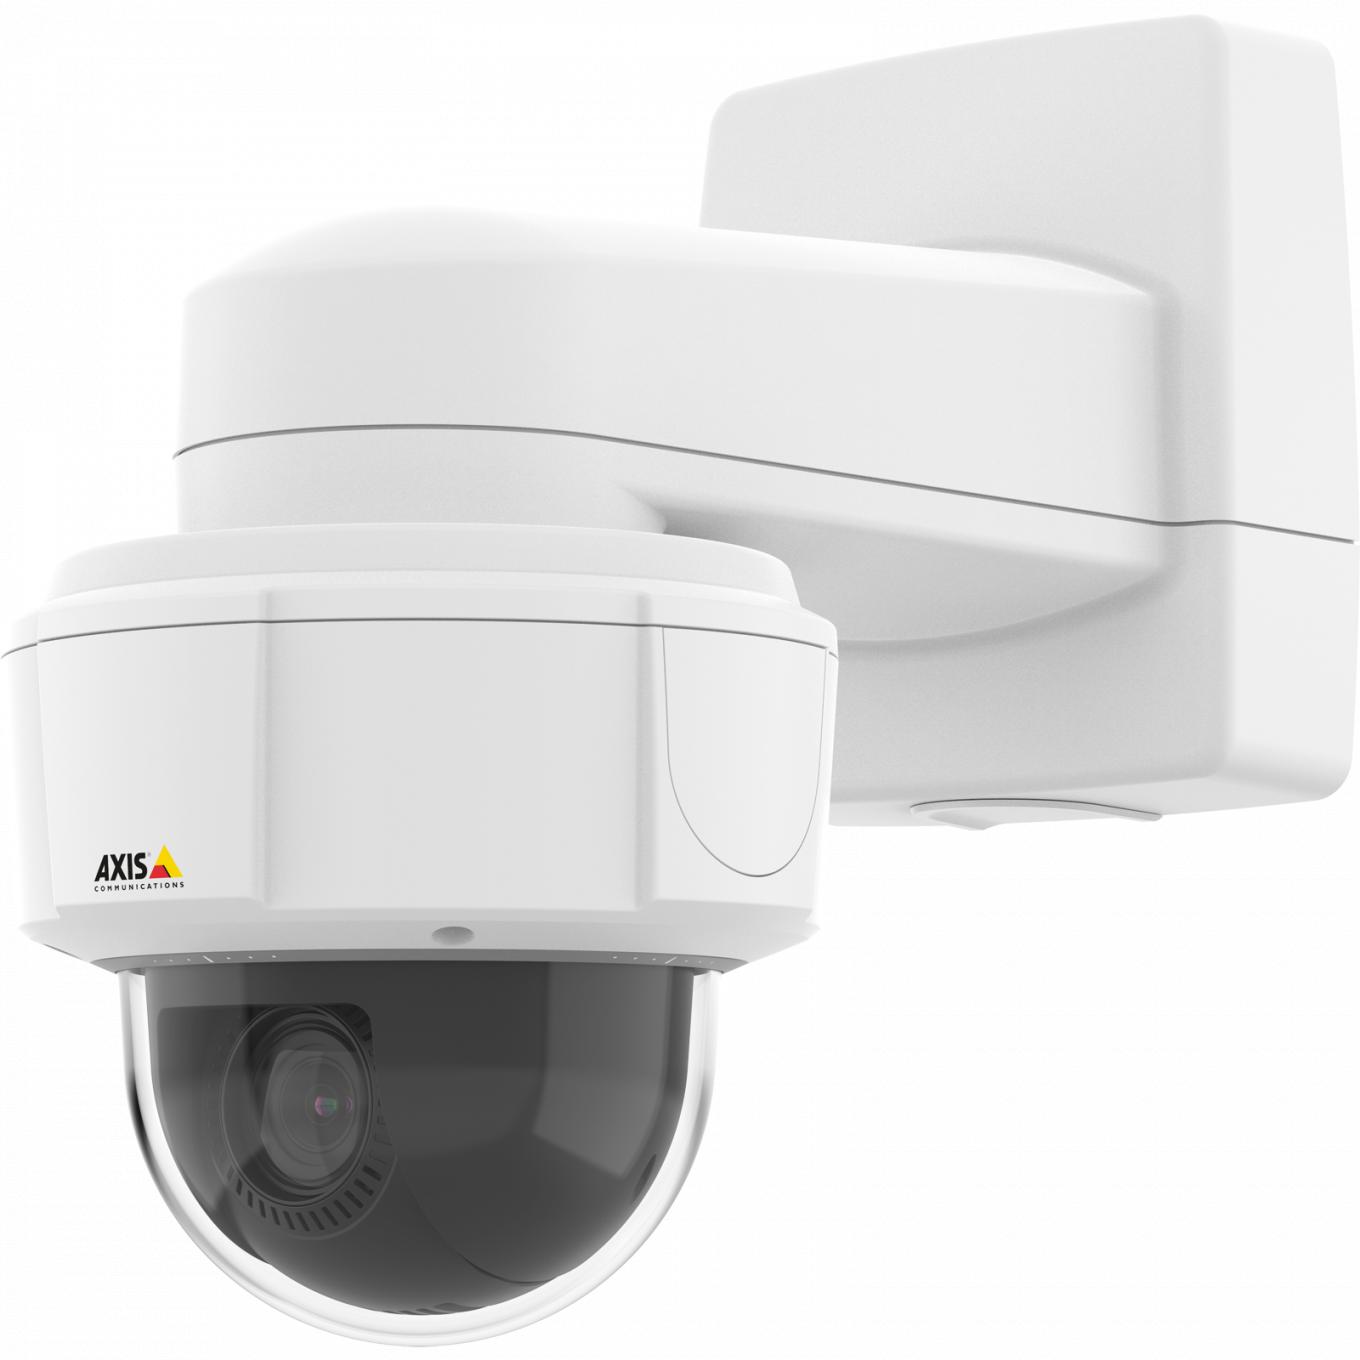  IP-камера Axis M5525-E поддерживает непрерывное панорамирование на 360° и технологию Axis Zipstream